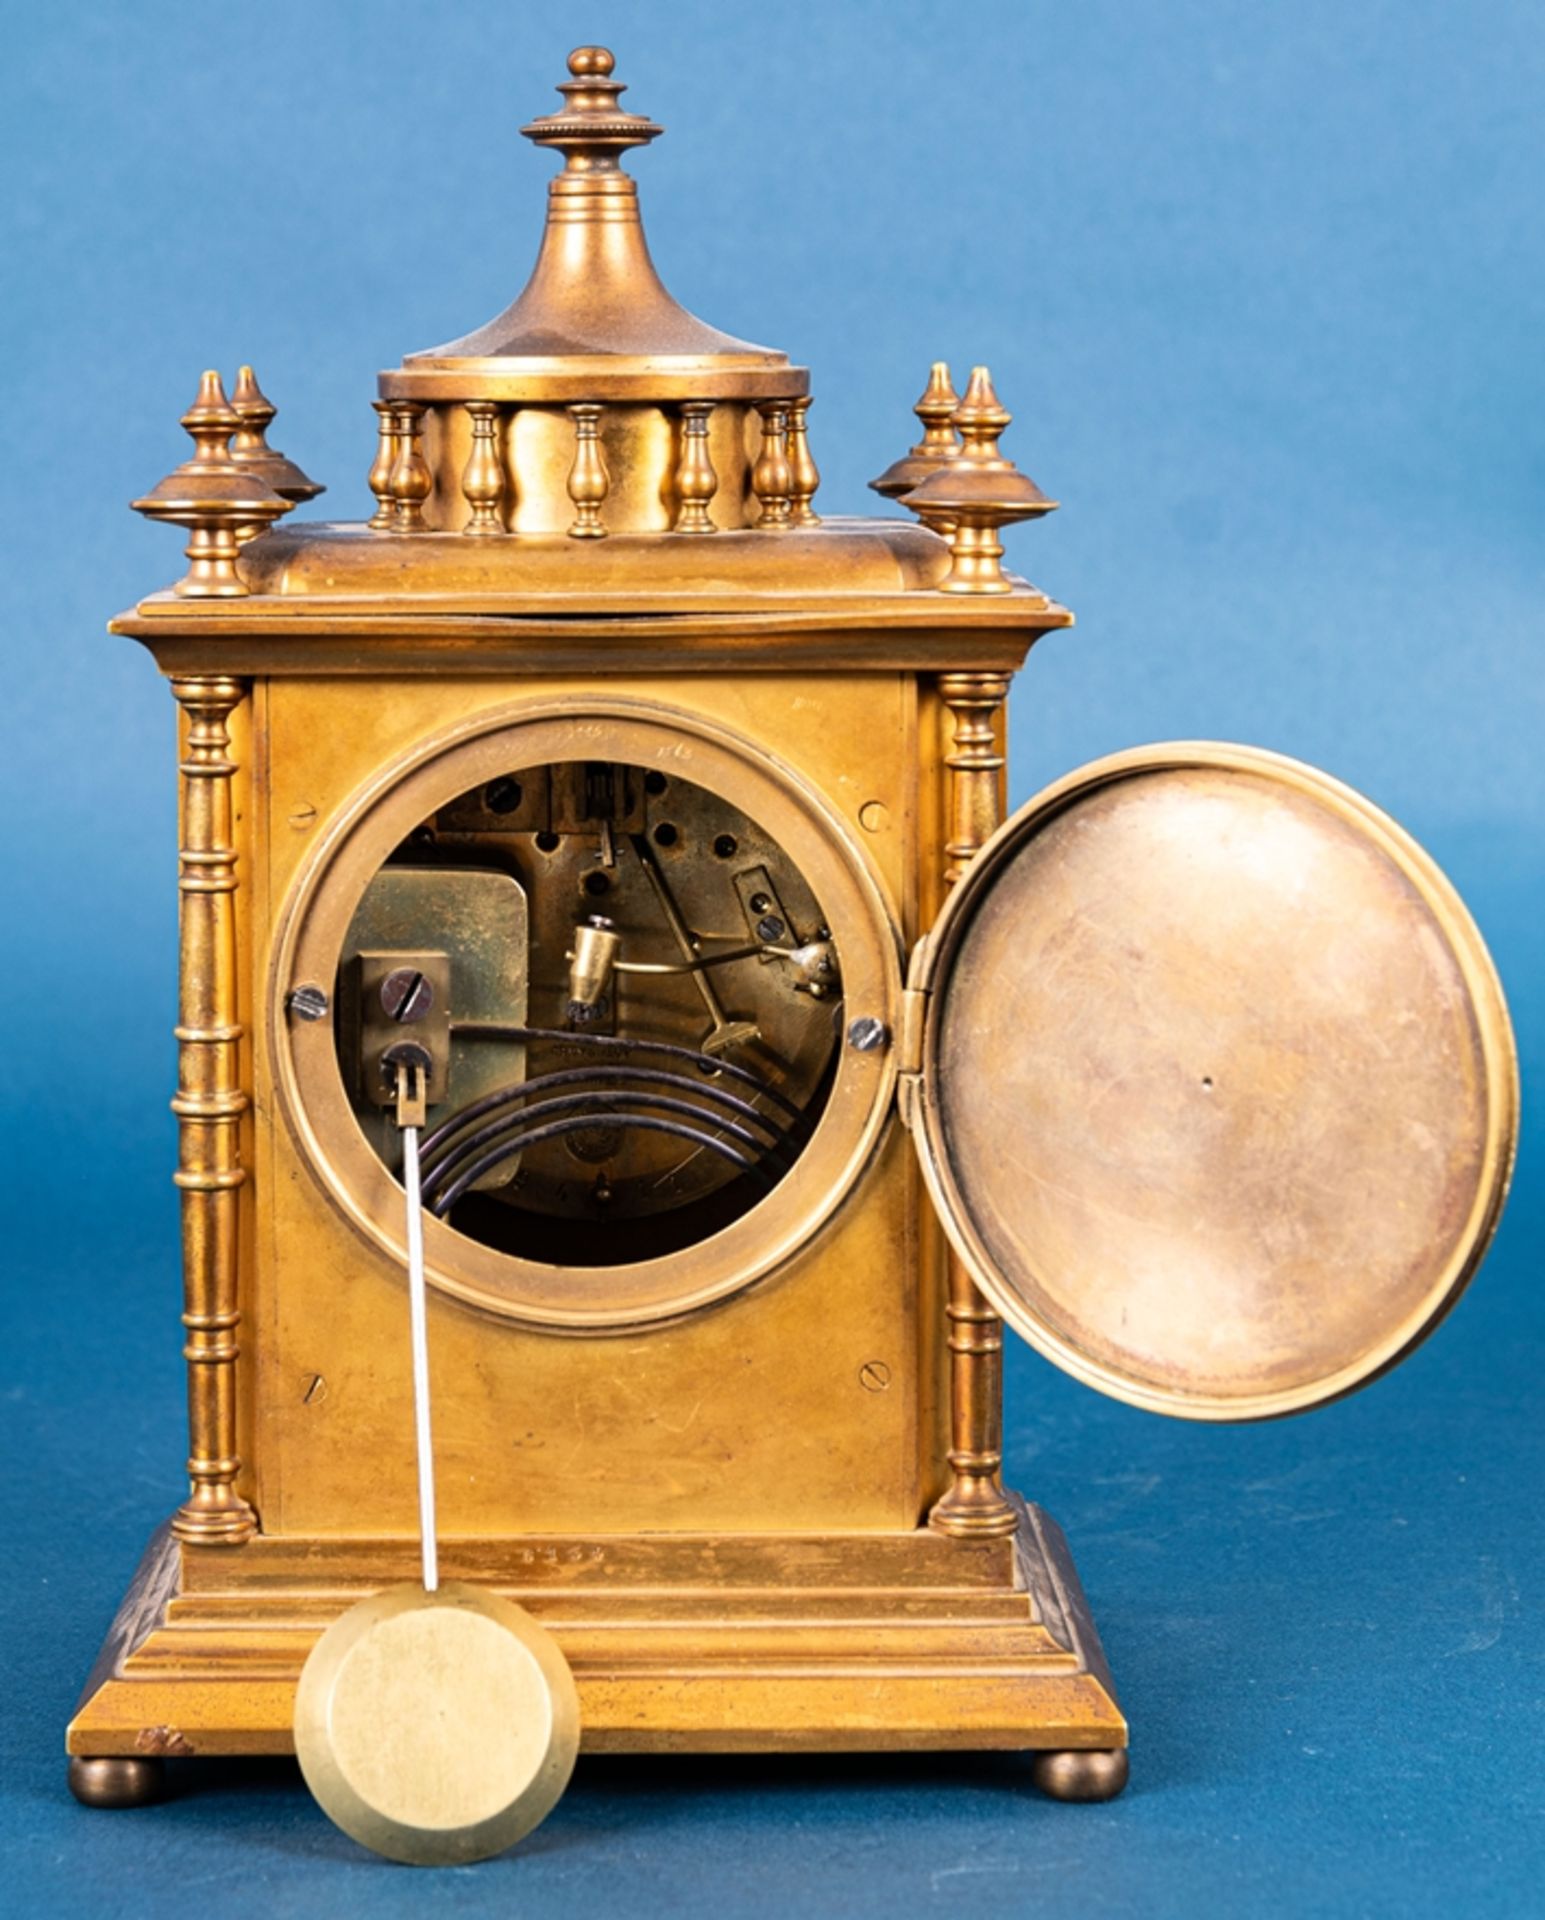 Kaminuhr in Messinggehäuse, Frankreich um 1900; ungeprüftes mechanisches Uhrwer - Image 11 of 20